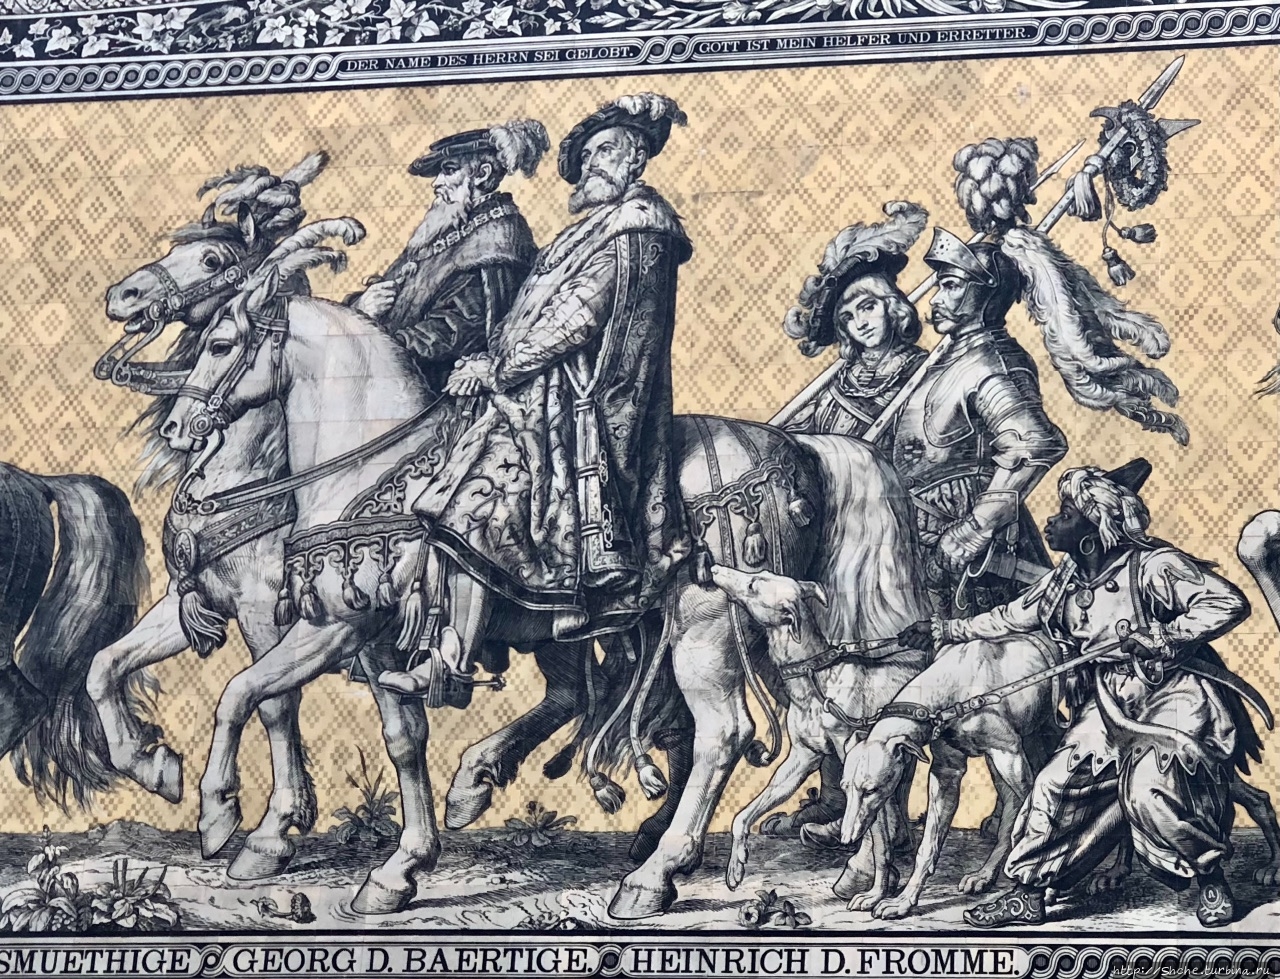 Шествие князей, панно Дрезден, Германия